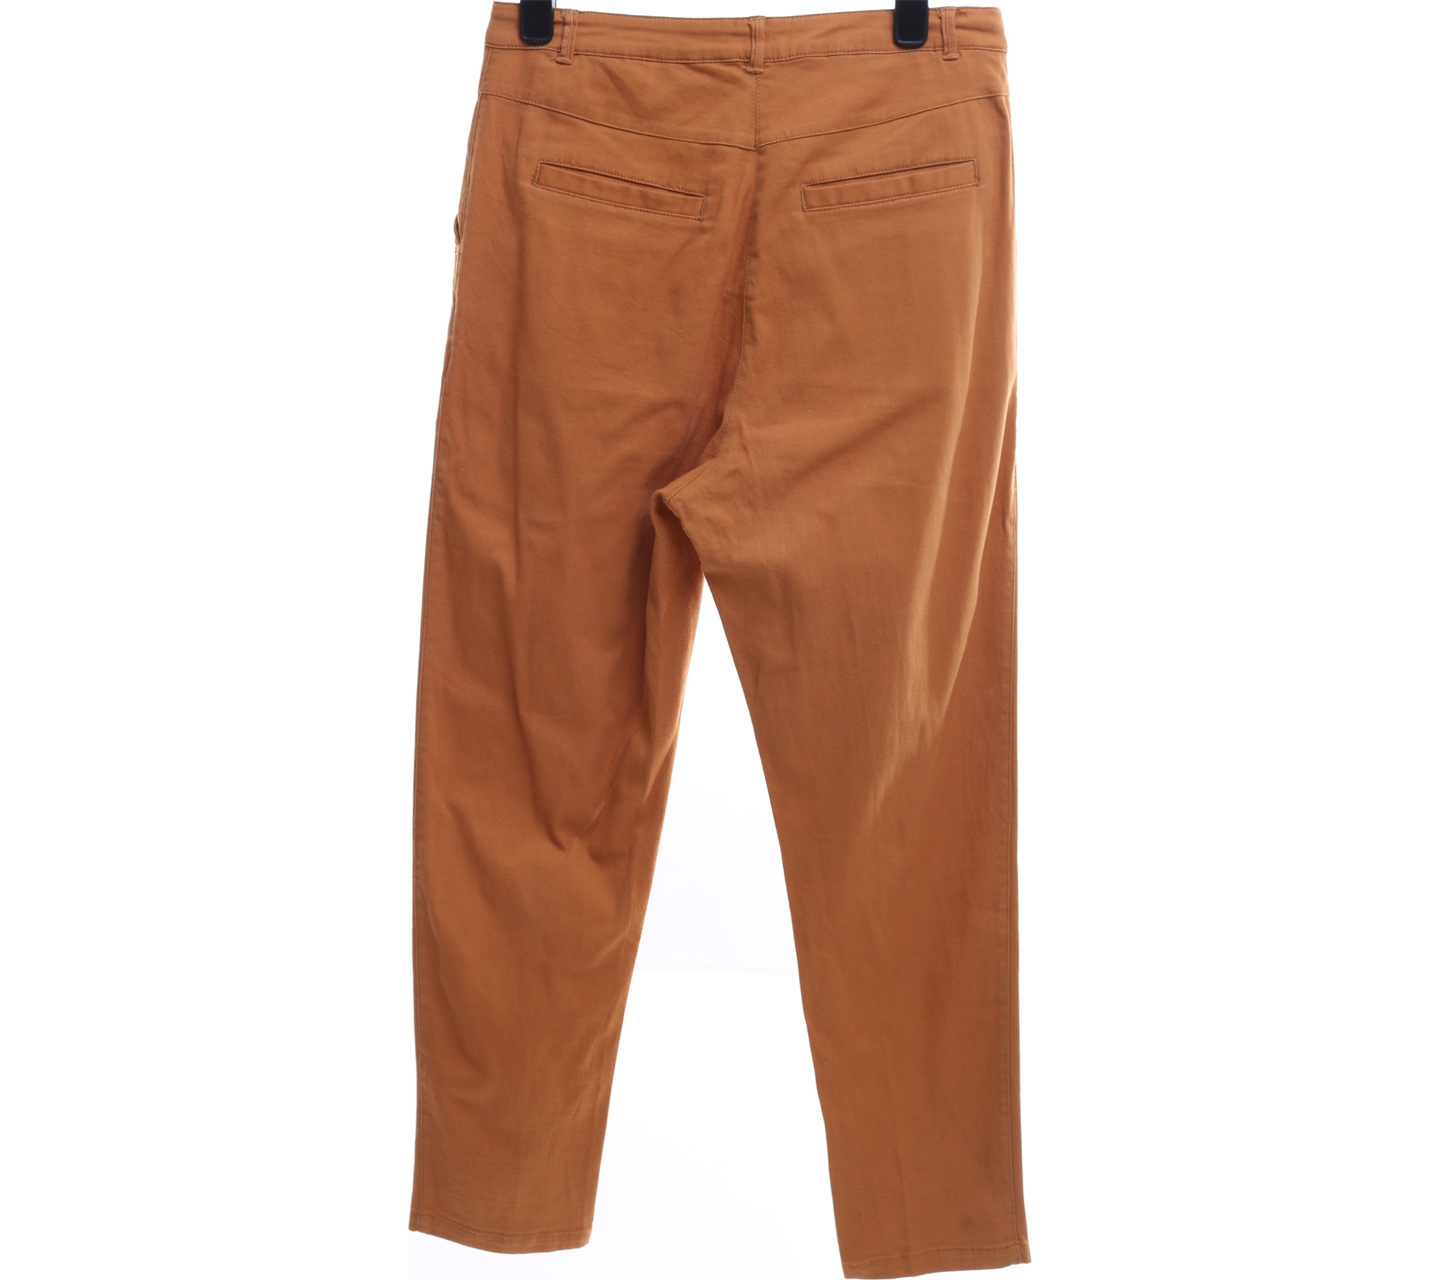 GOWIGASA Brown Straight Long Pants